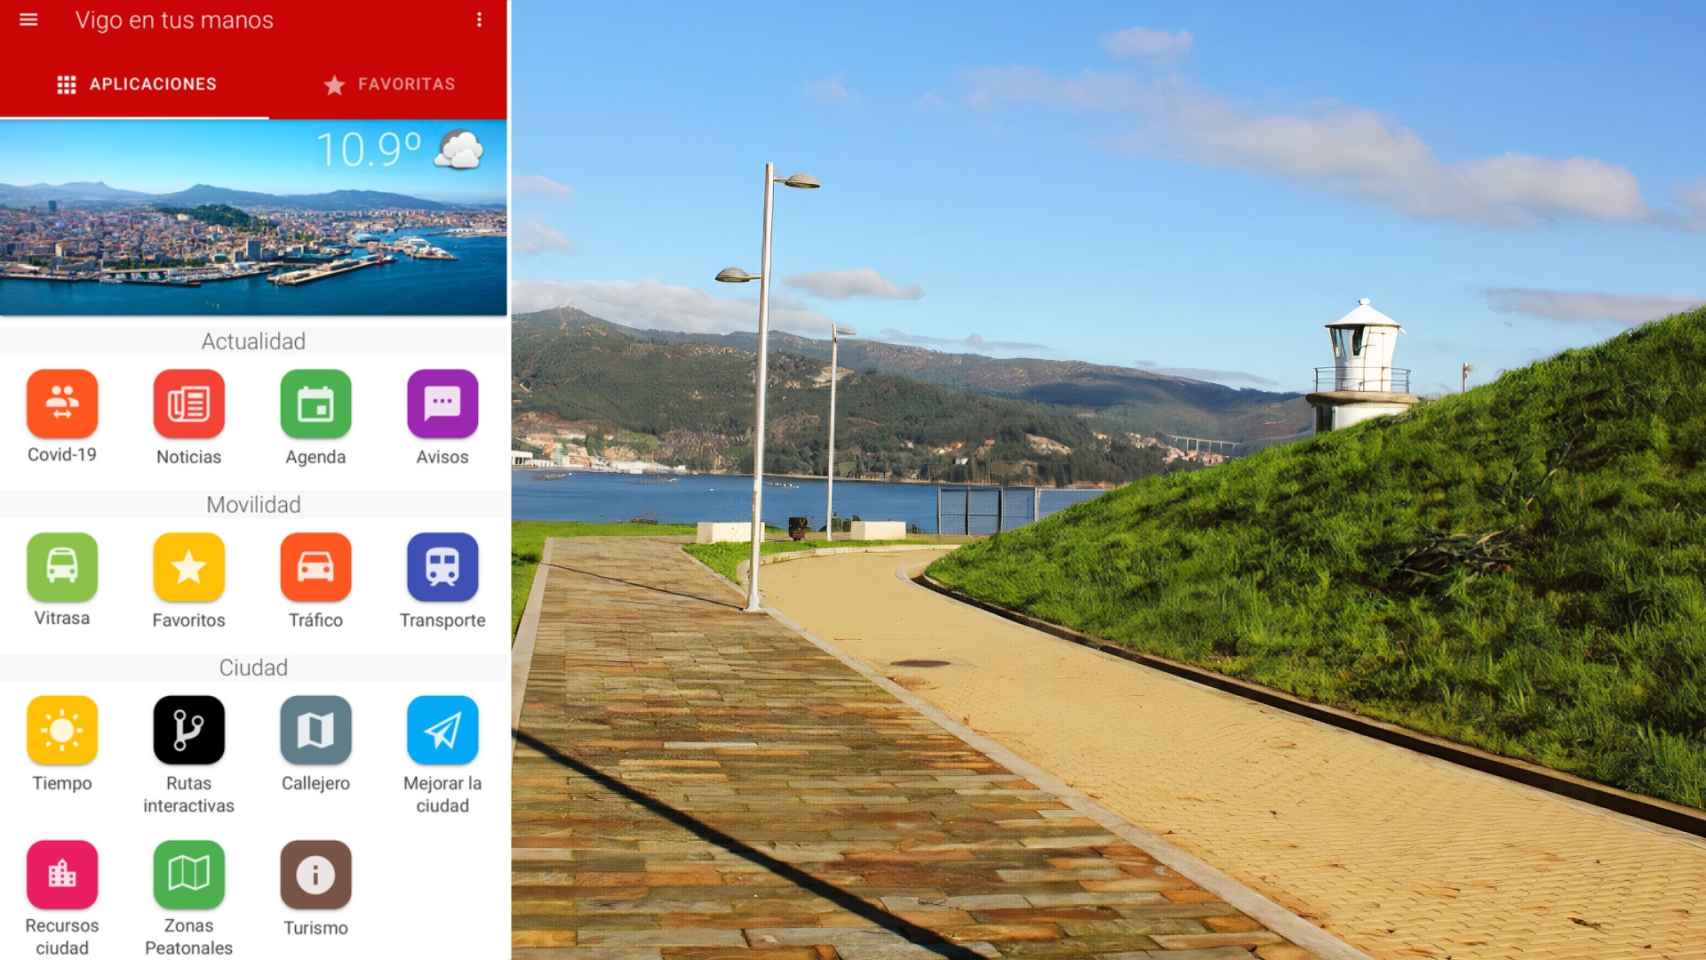 14 nuevas rutas interactivas para la app Vigo